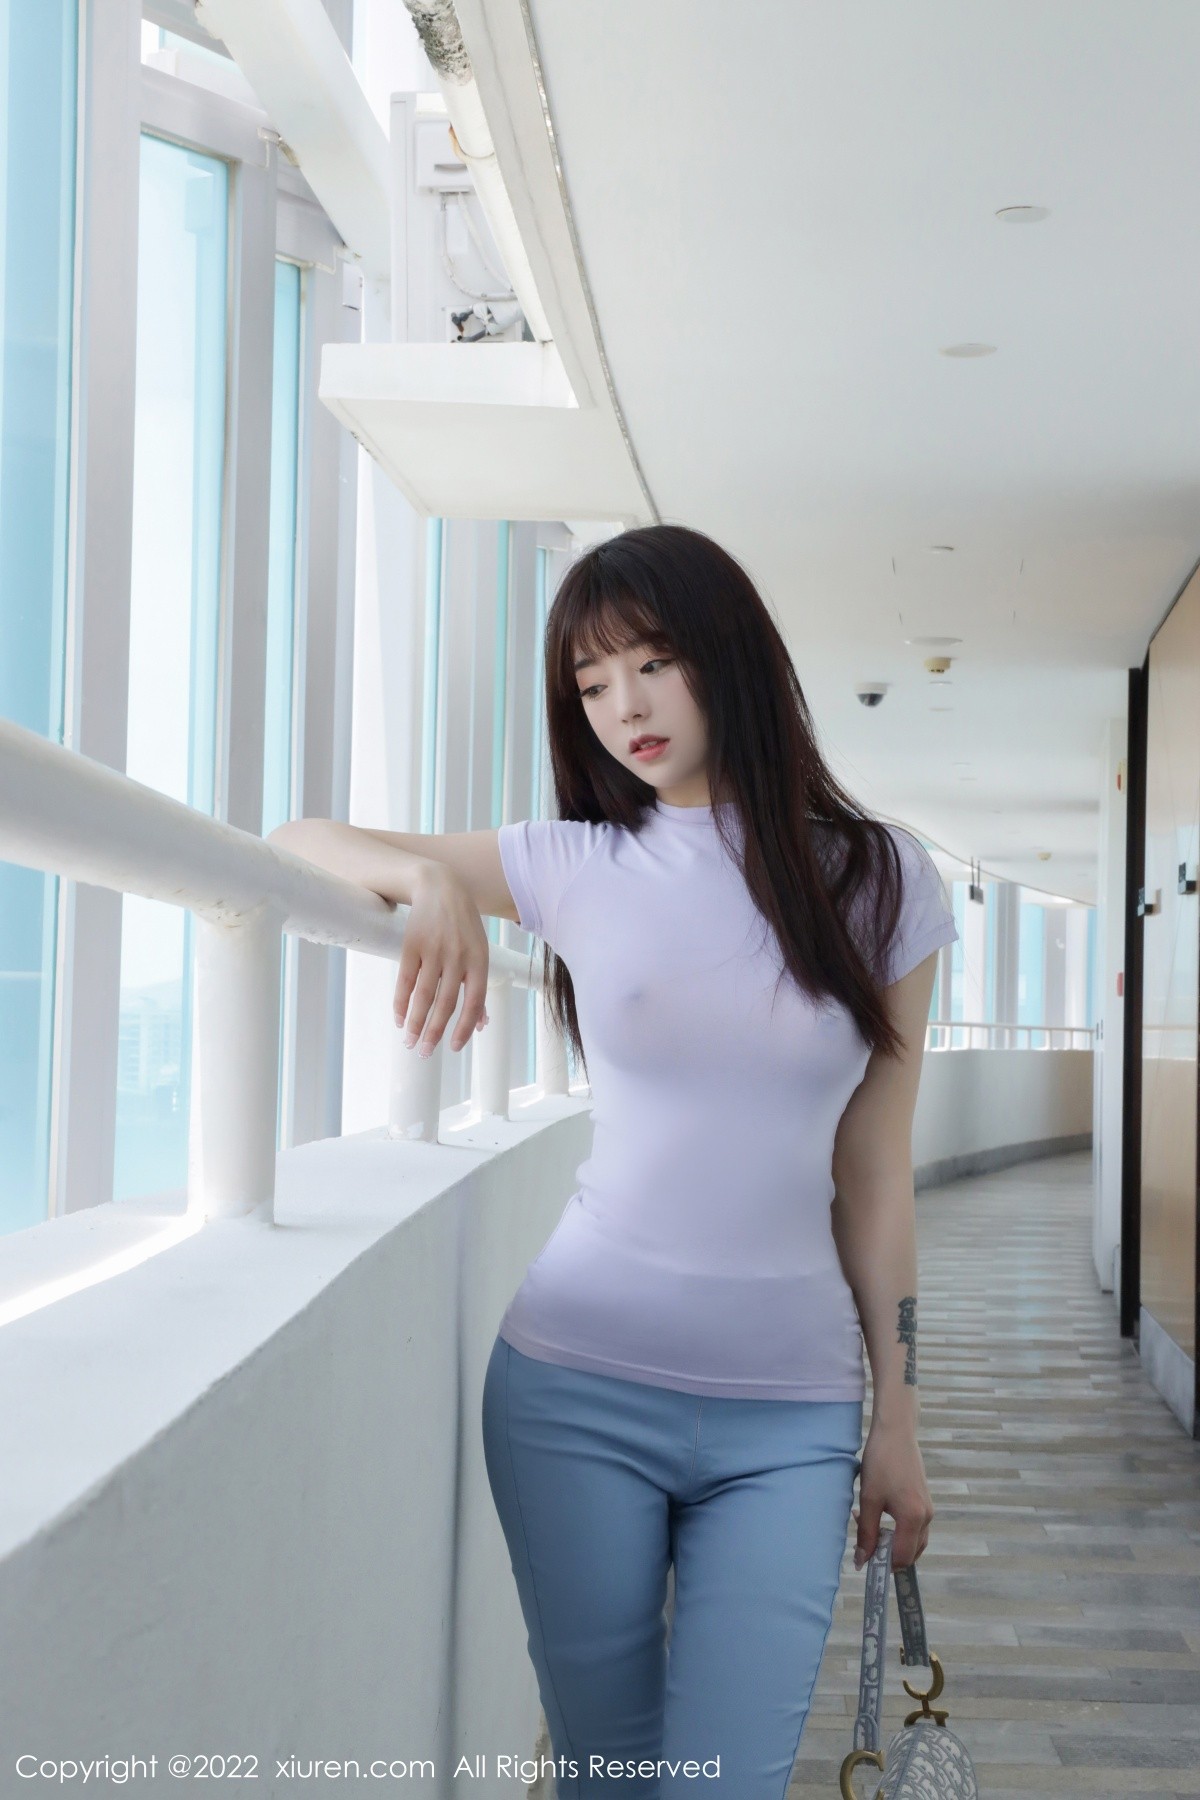 模特佘贝拉bella三亚旅拍紫色收身衣配长裤秀完美身材诱惑写真